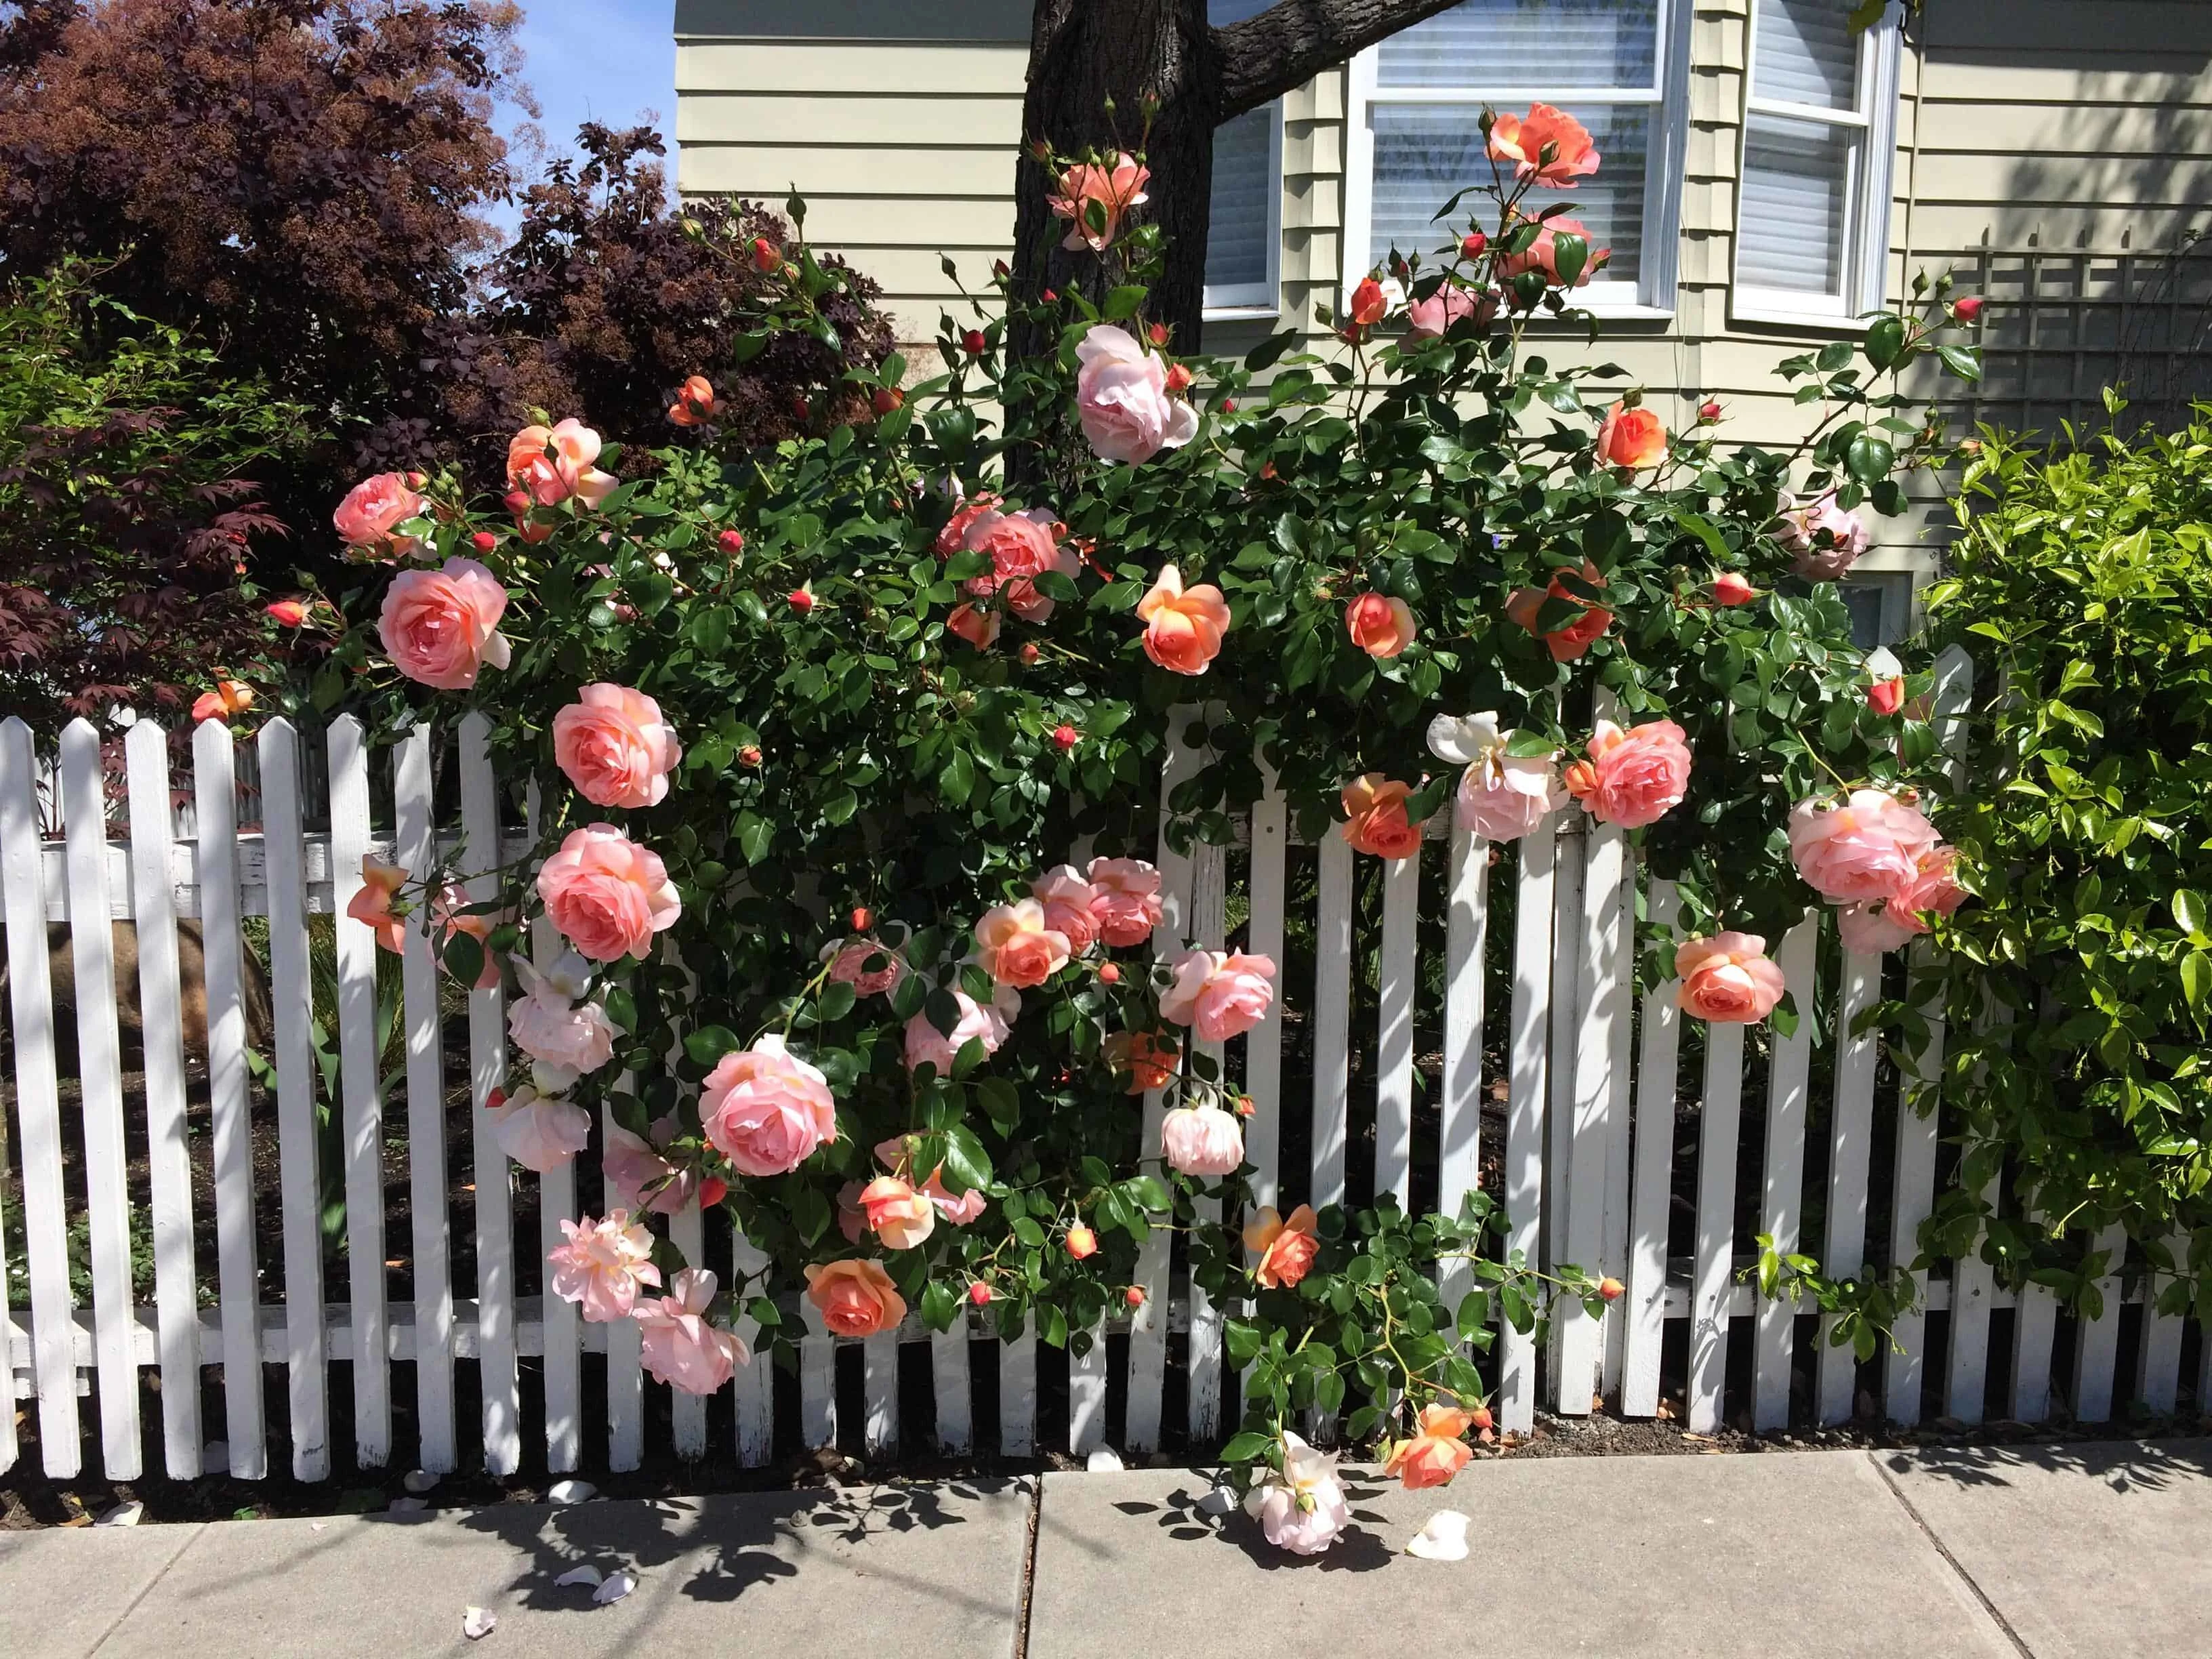 Roses peeking through a white fence